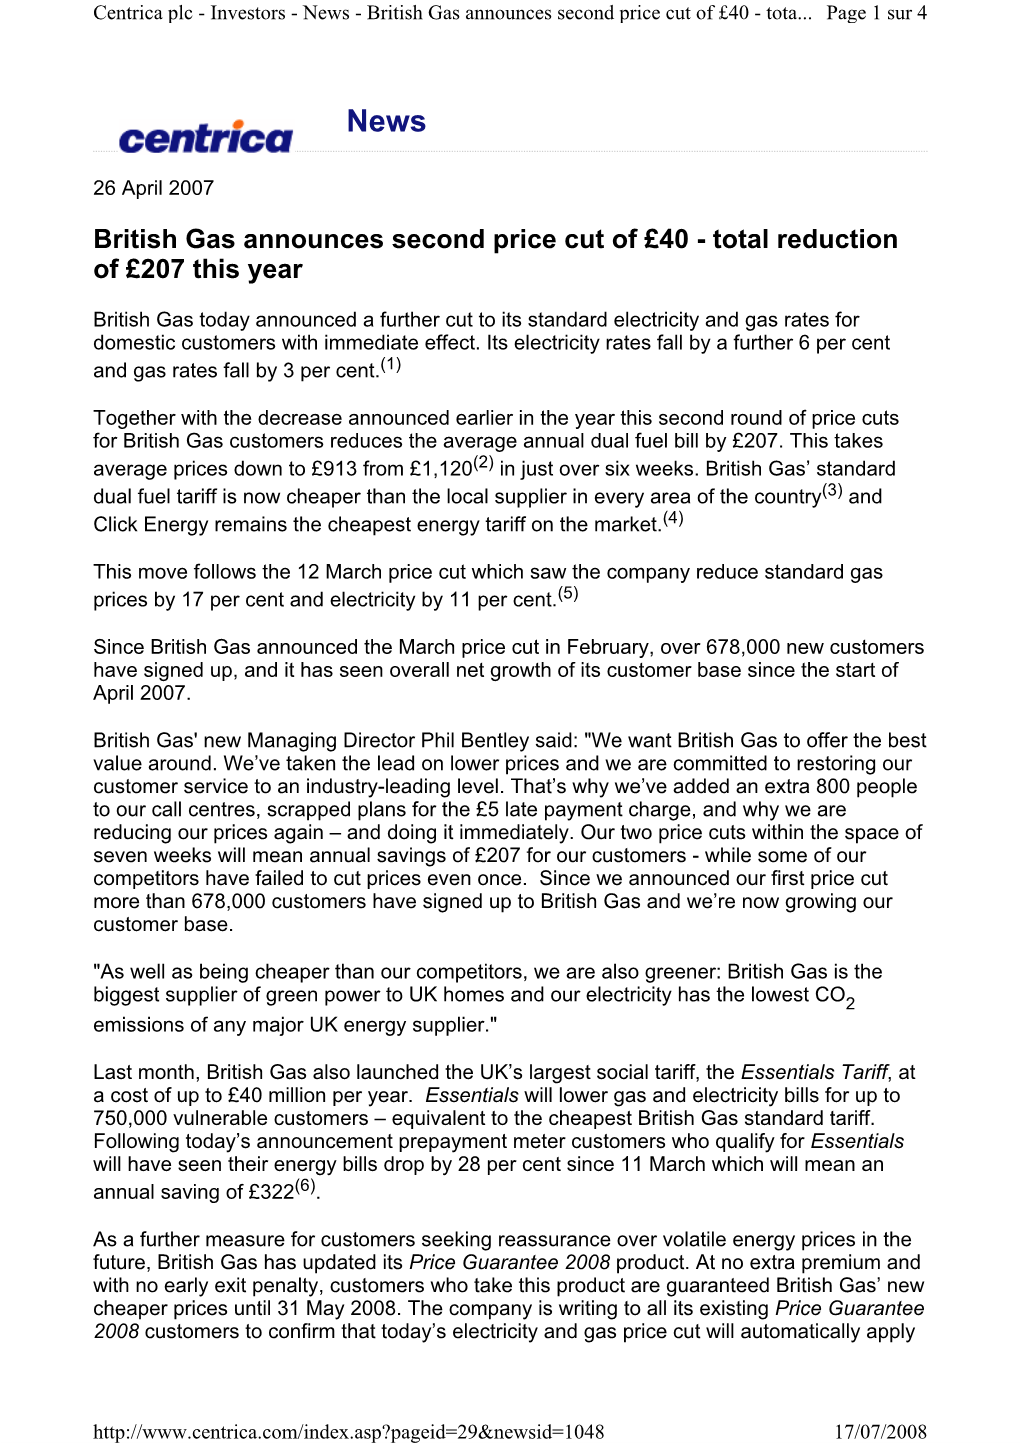 British Gas Announces Second Price Cut of £40 - Tota